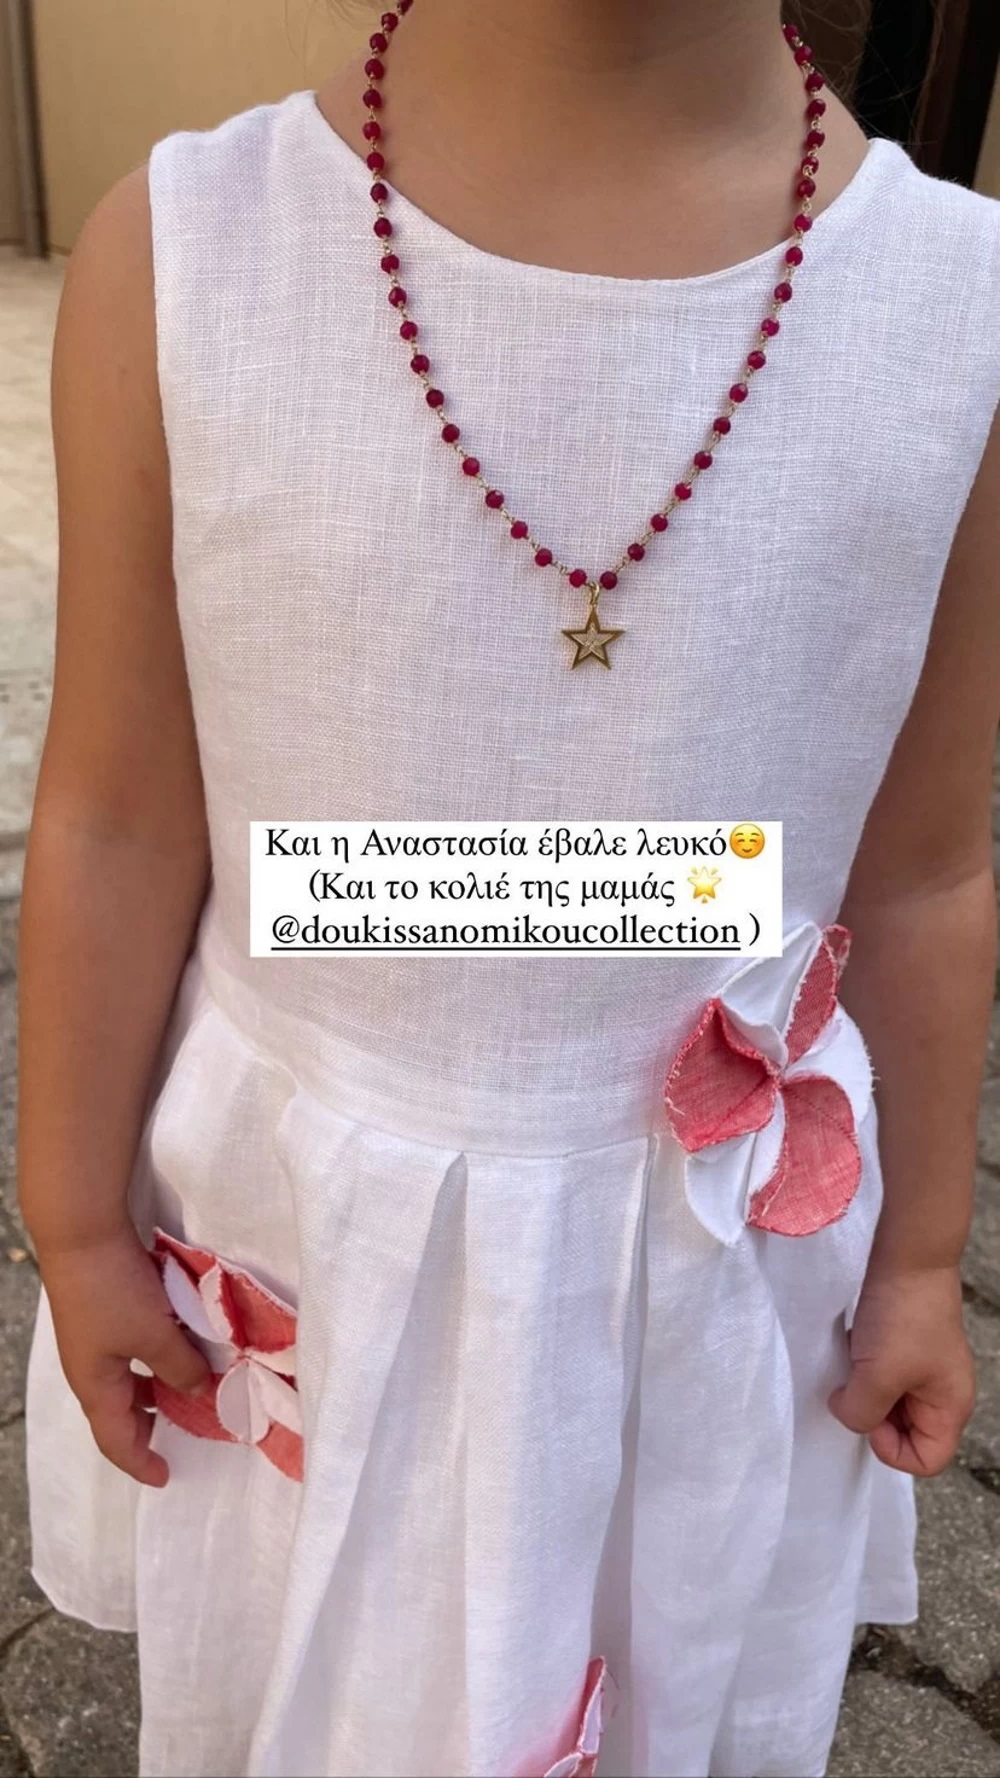 Η Δούκισσα Νομικού σε βάφτιση με κοριτσίστικο φόρεμα – Την συνόδευε ο γιο της, Σάββας! (εικόνες)